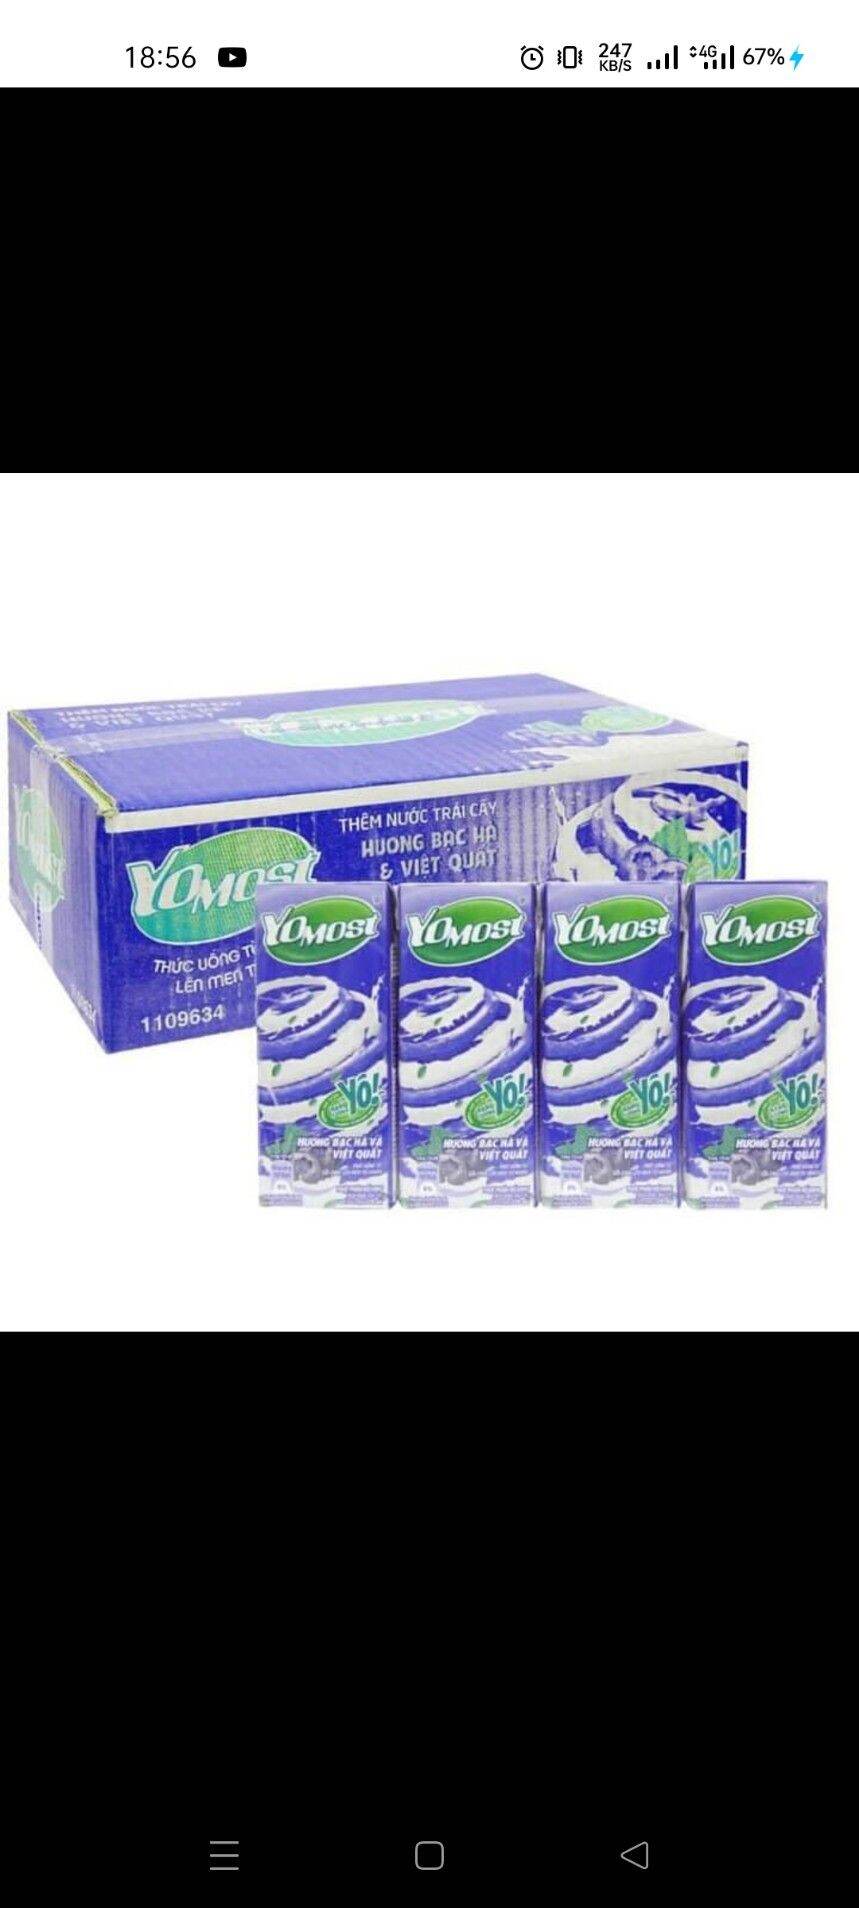 Sữa Yomost vị Việt quất 1 thùng 12 lốc